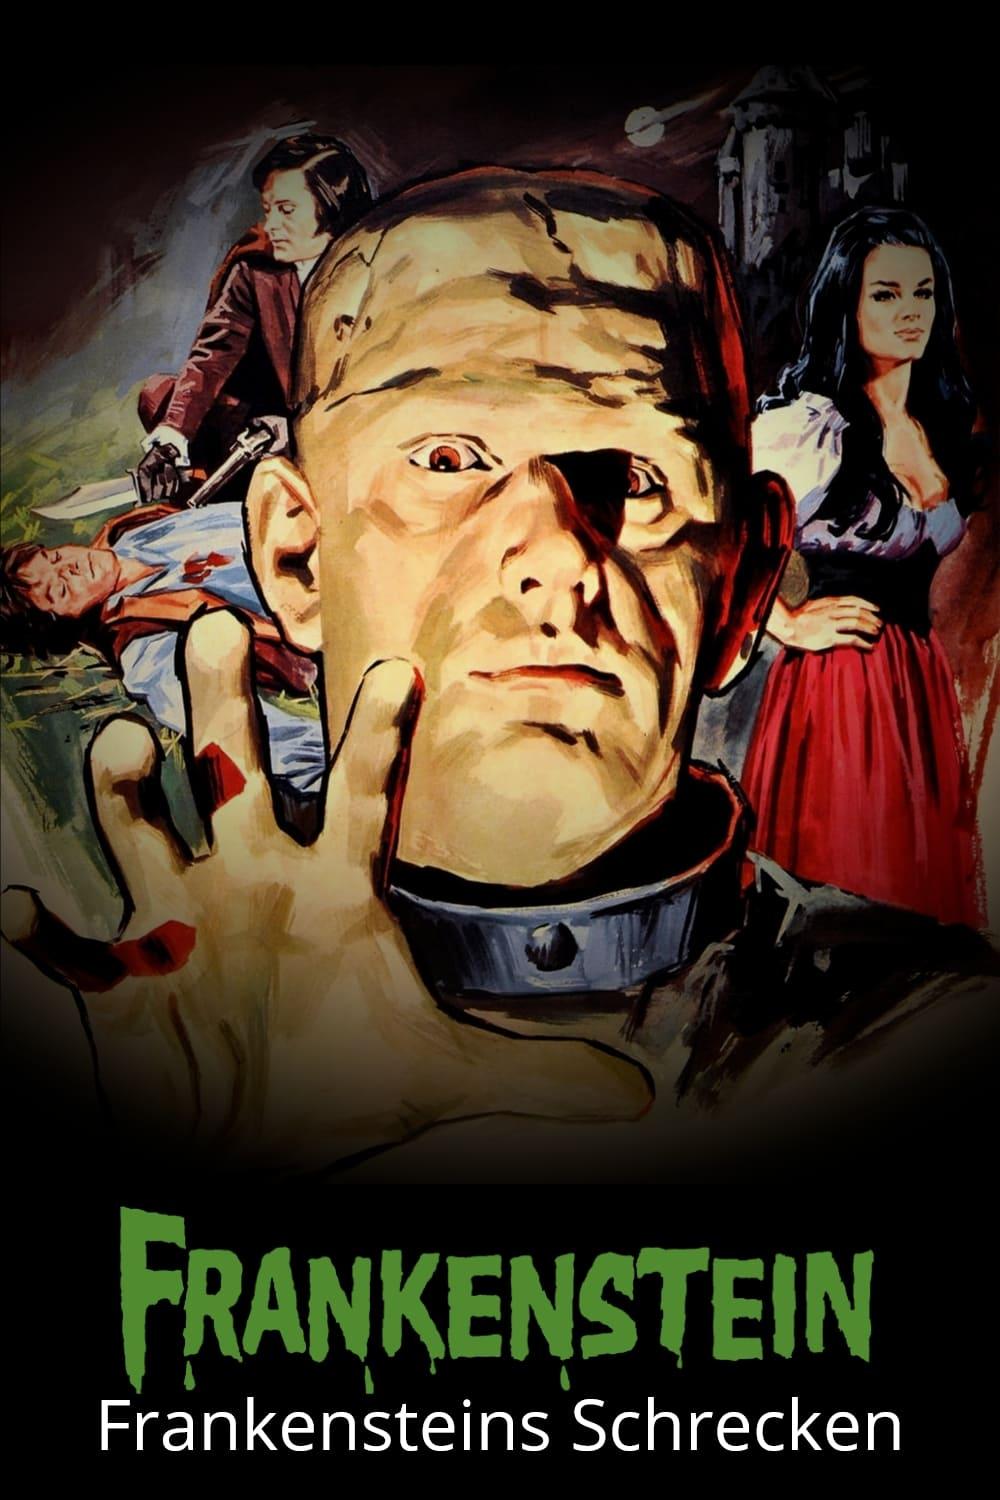 Frankensteins Schrecken poster